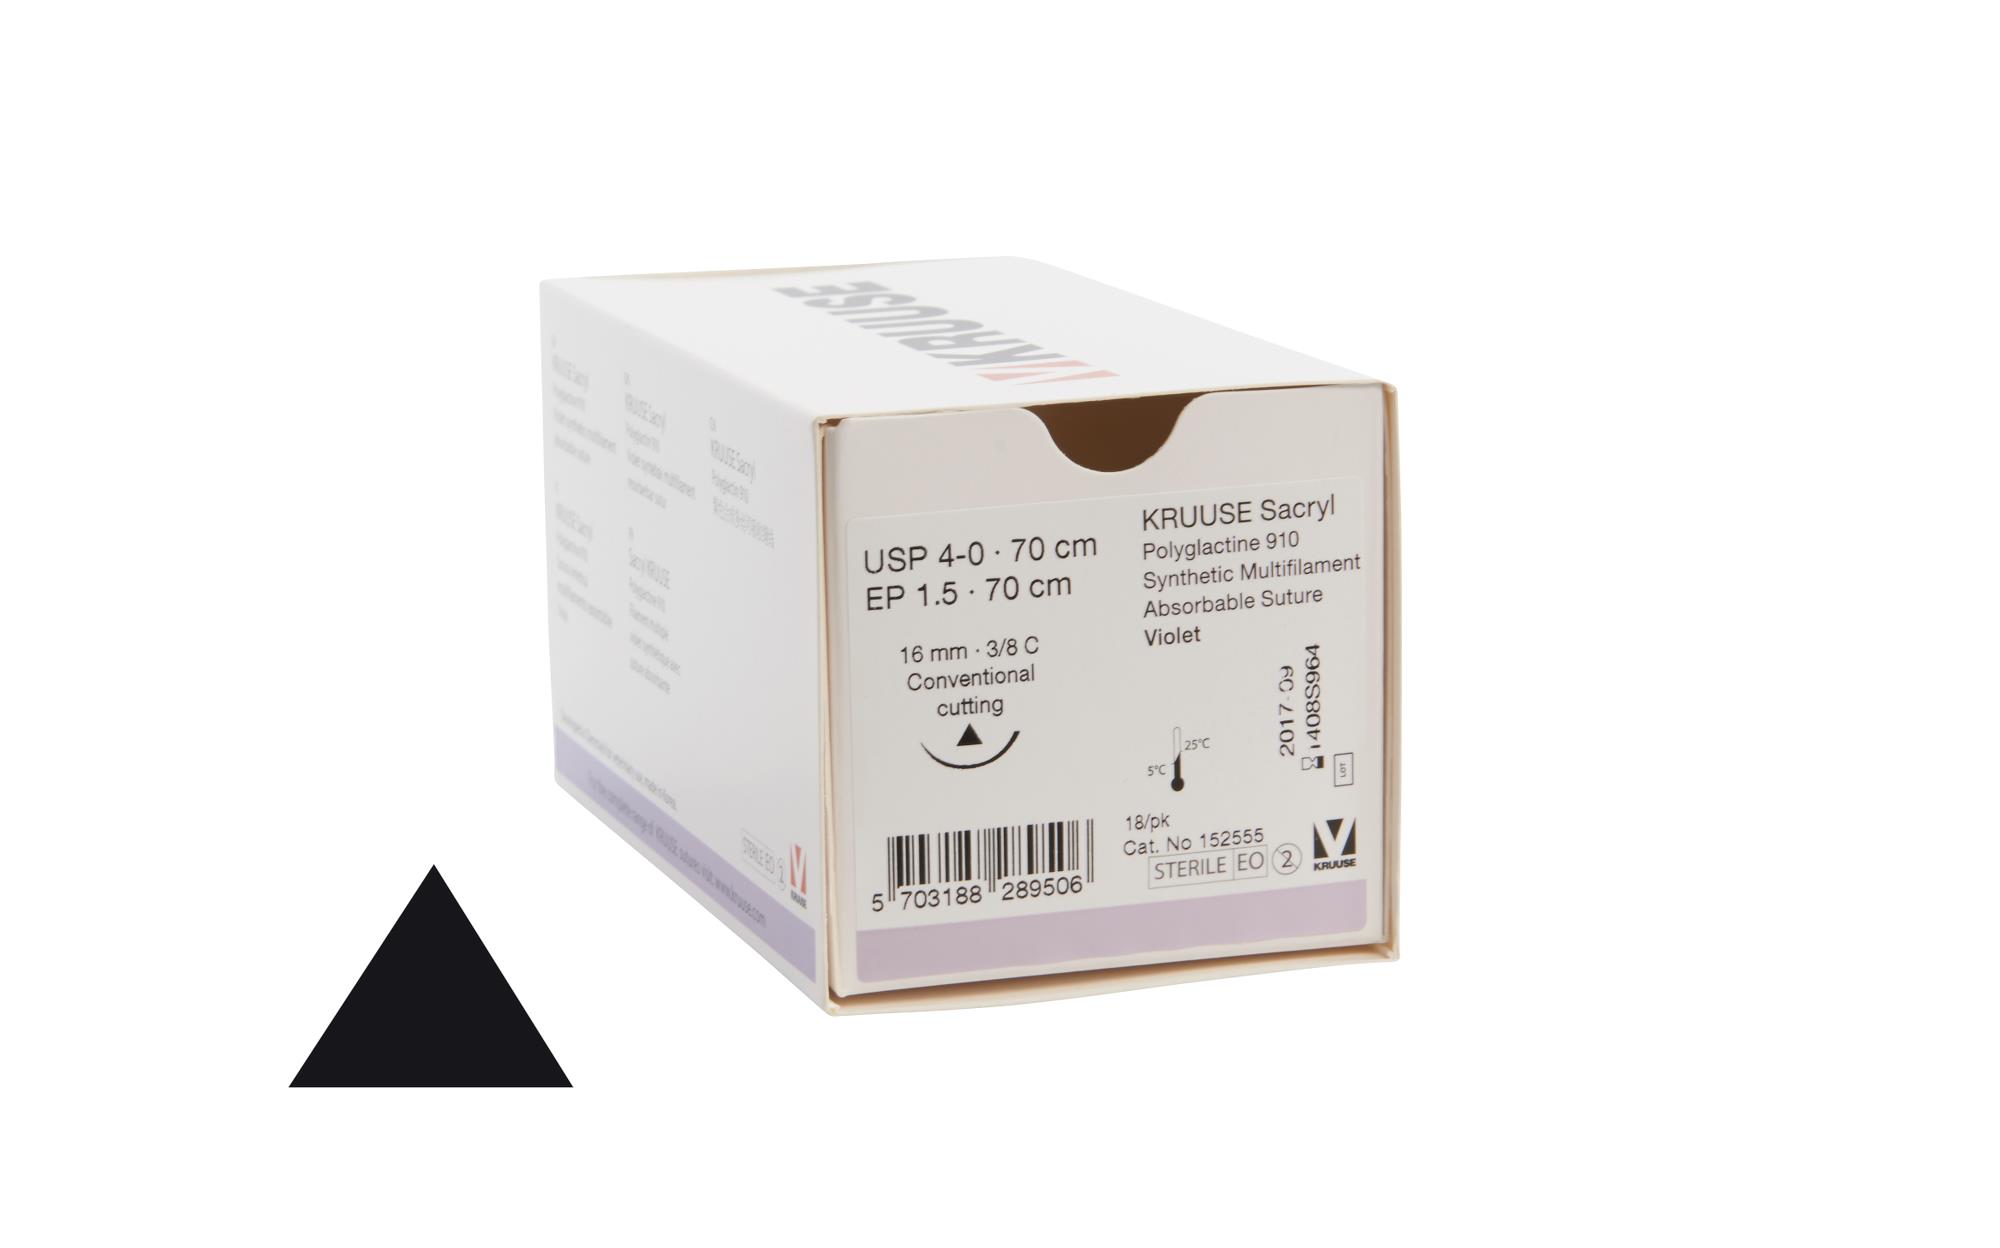 KRUUSE Sacryl Suture, USP 4-0, 70 cm, 16 mm, 3/8 C, CC, 18/pk